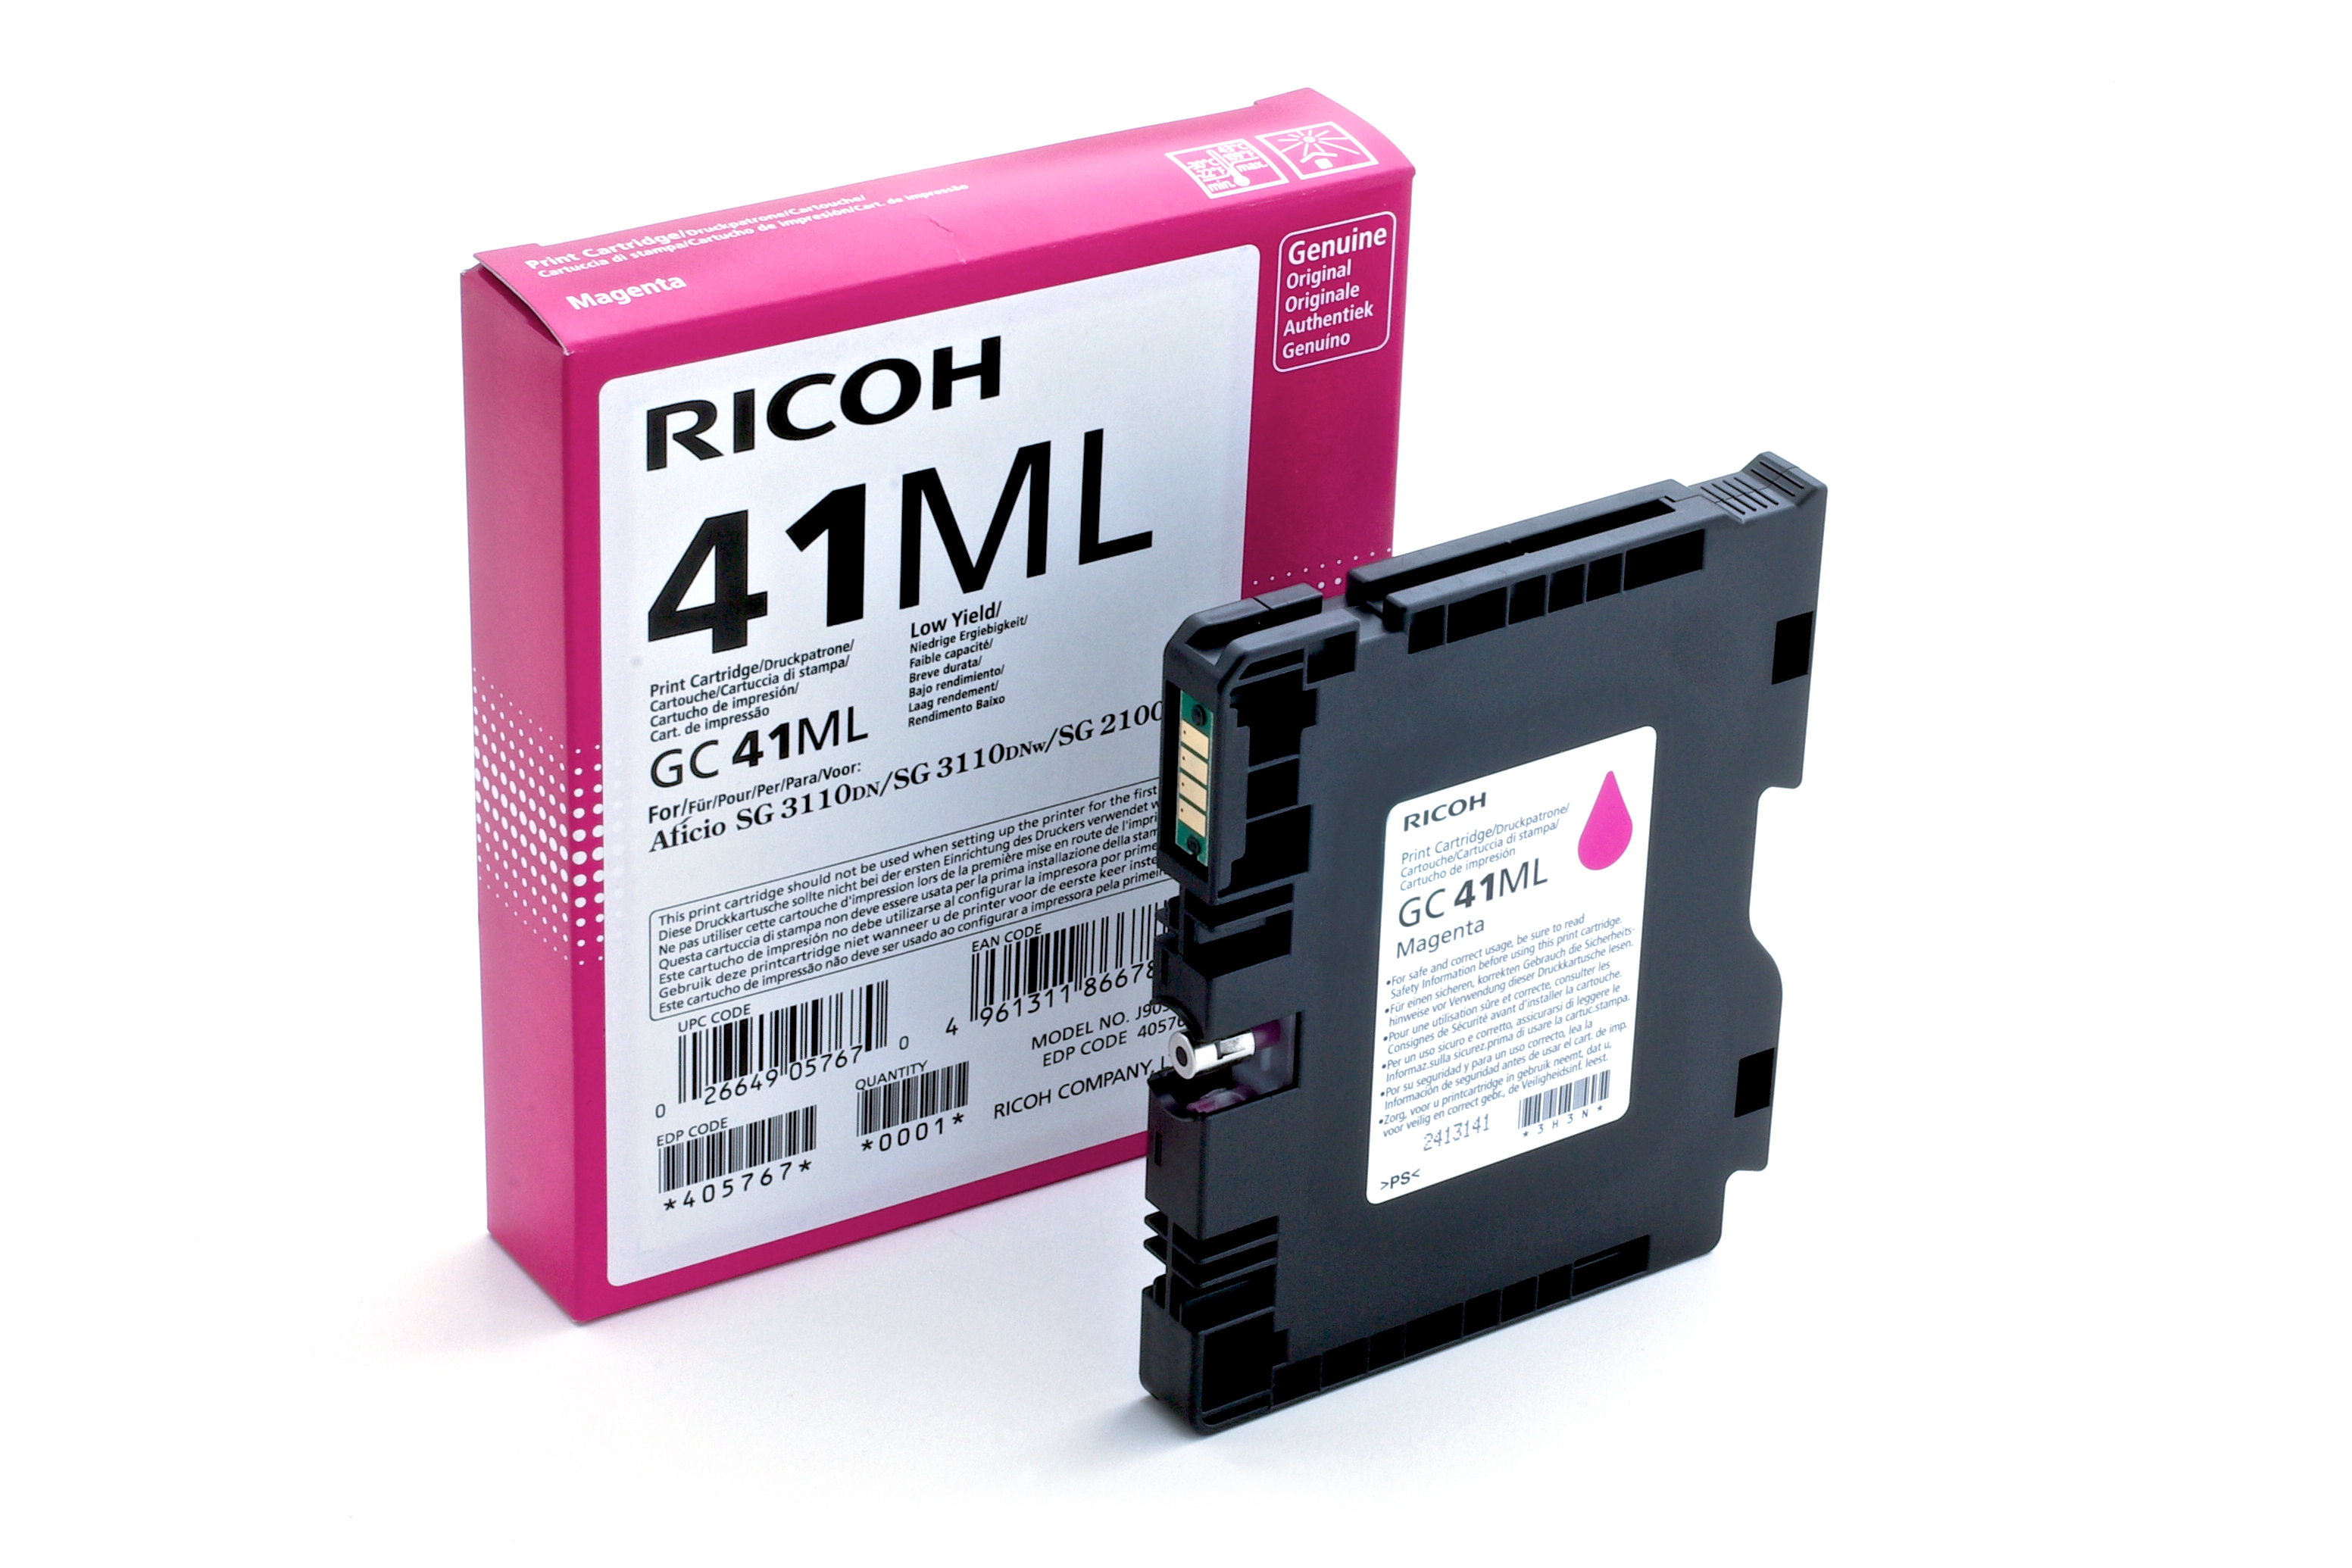 Ricoh GC 41ML - Low Yield - Magenta - Original